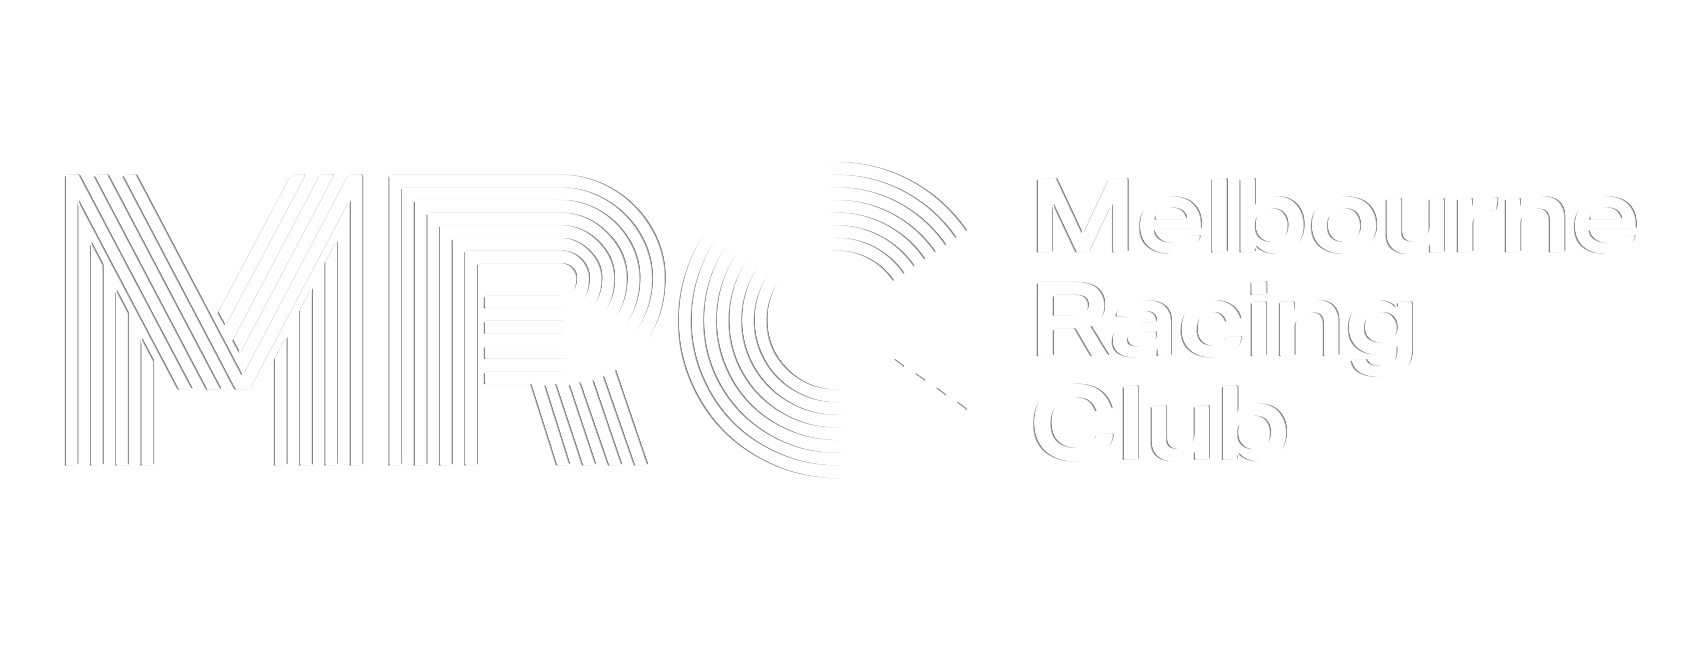 MRC RC